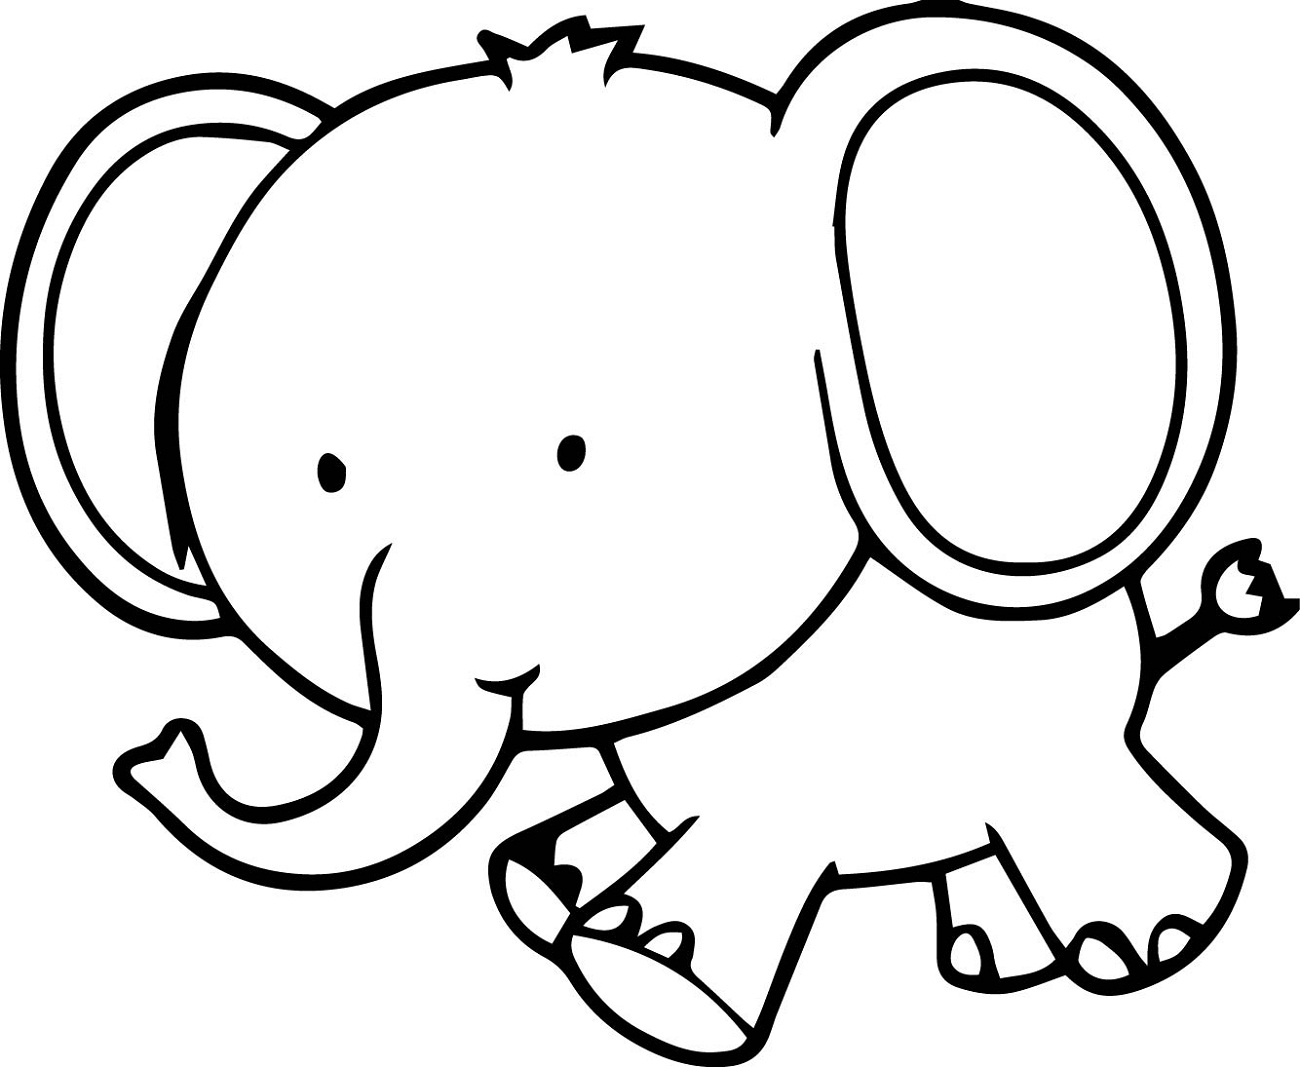 3 elephants outline